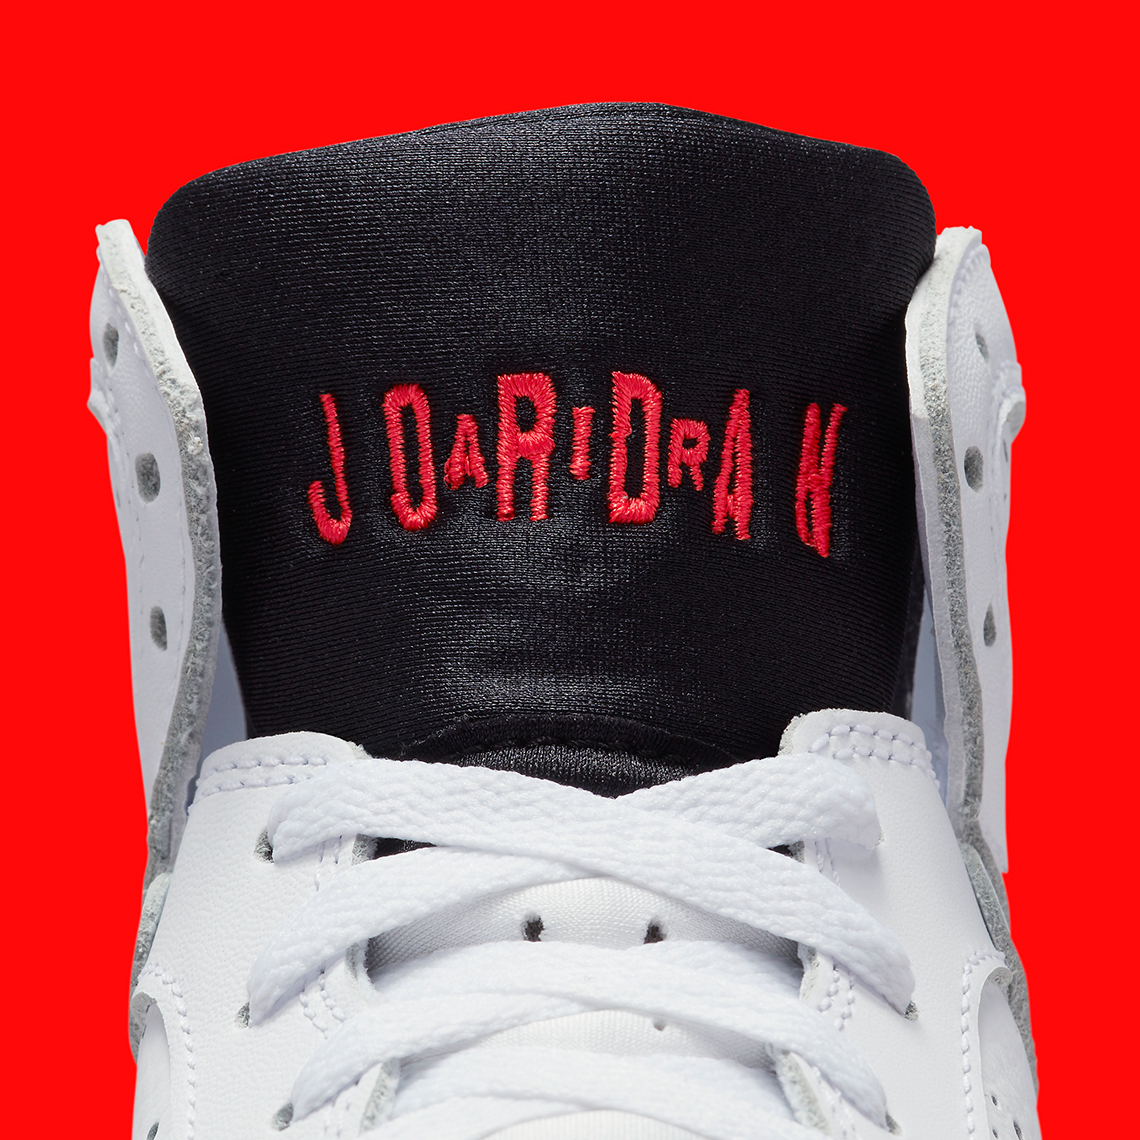 Air Jordan 7 Infrared Cu9307 160 Release Date 6